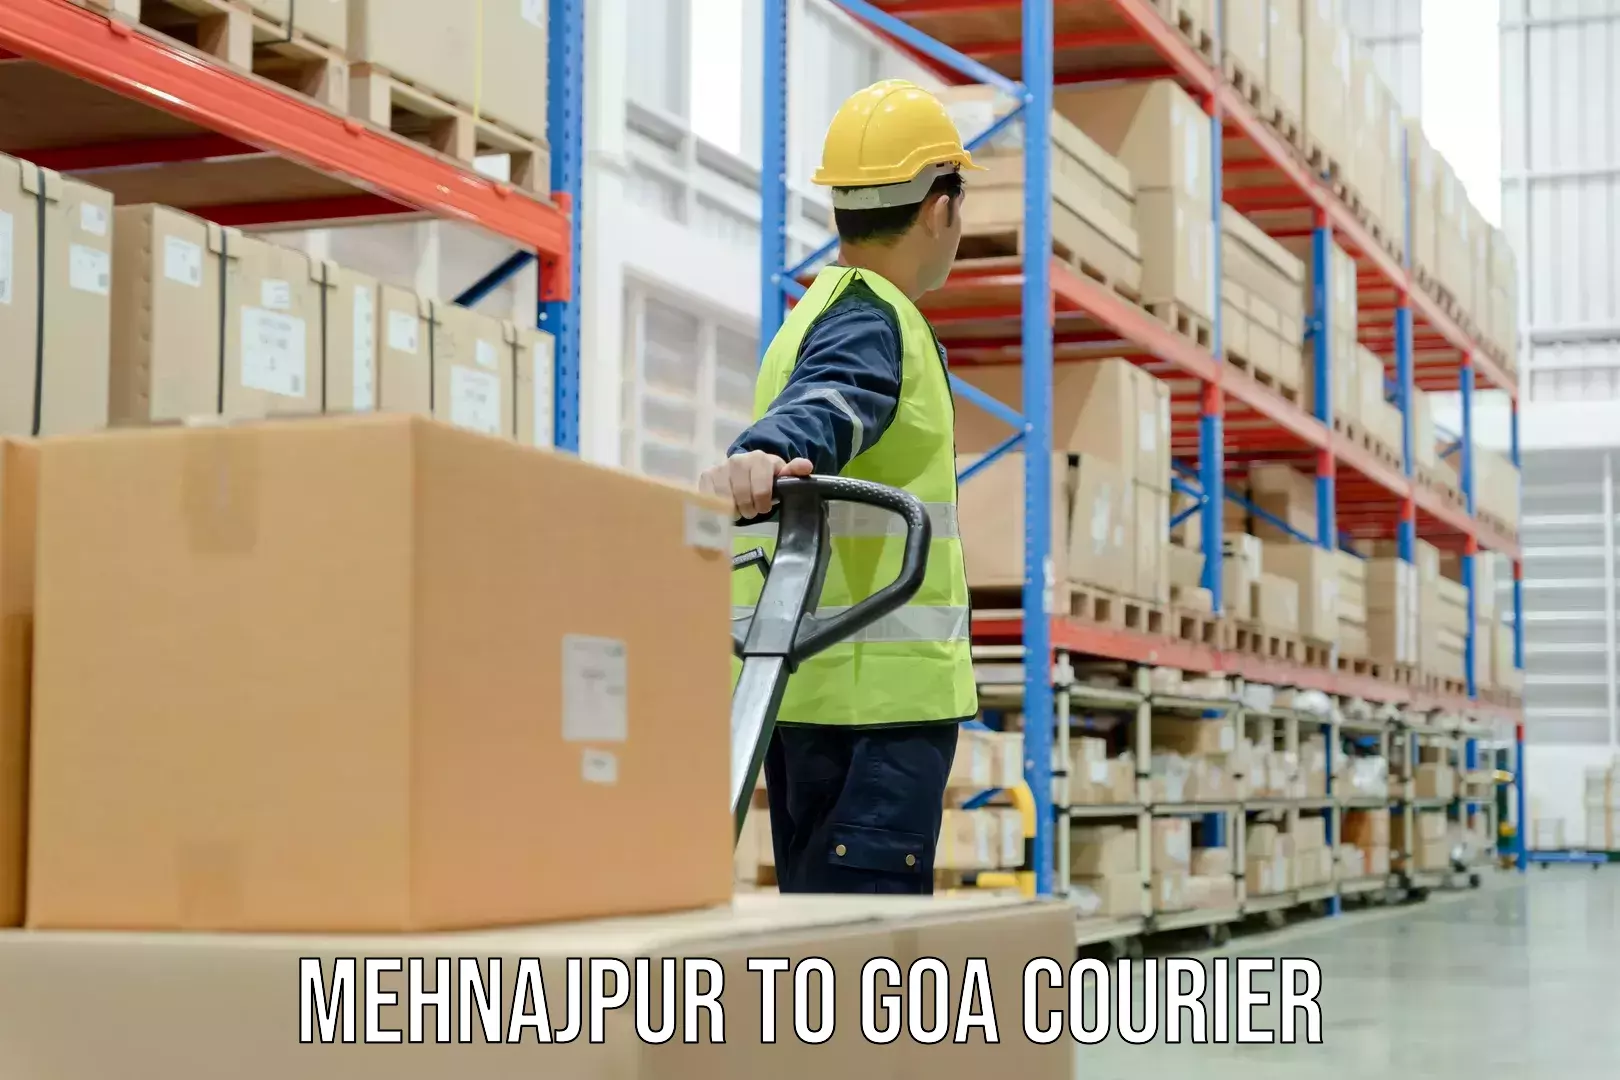 Flexible parcel services Mehnajpur to NIT Goa